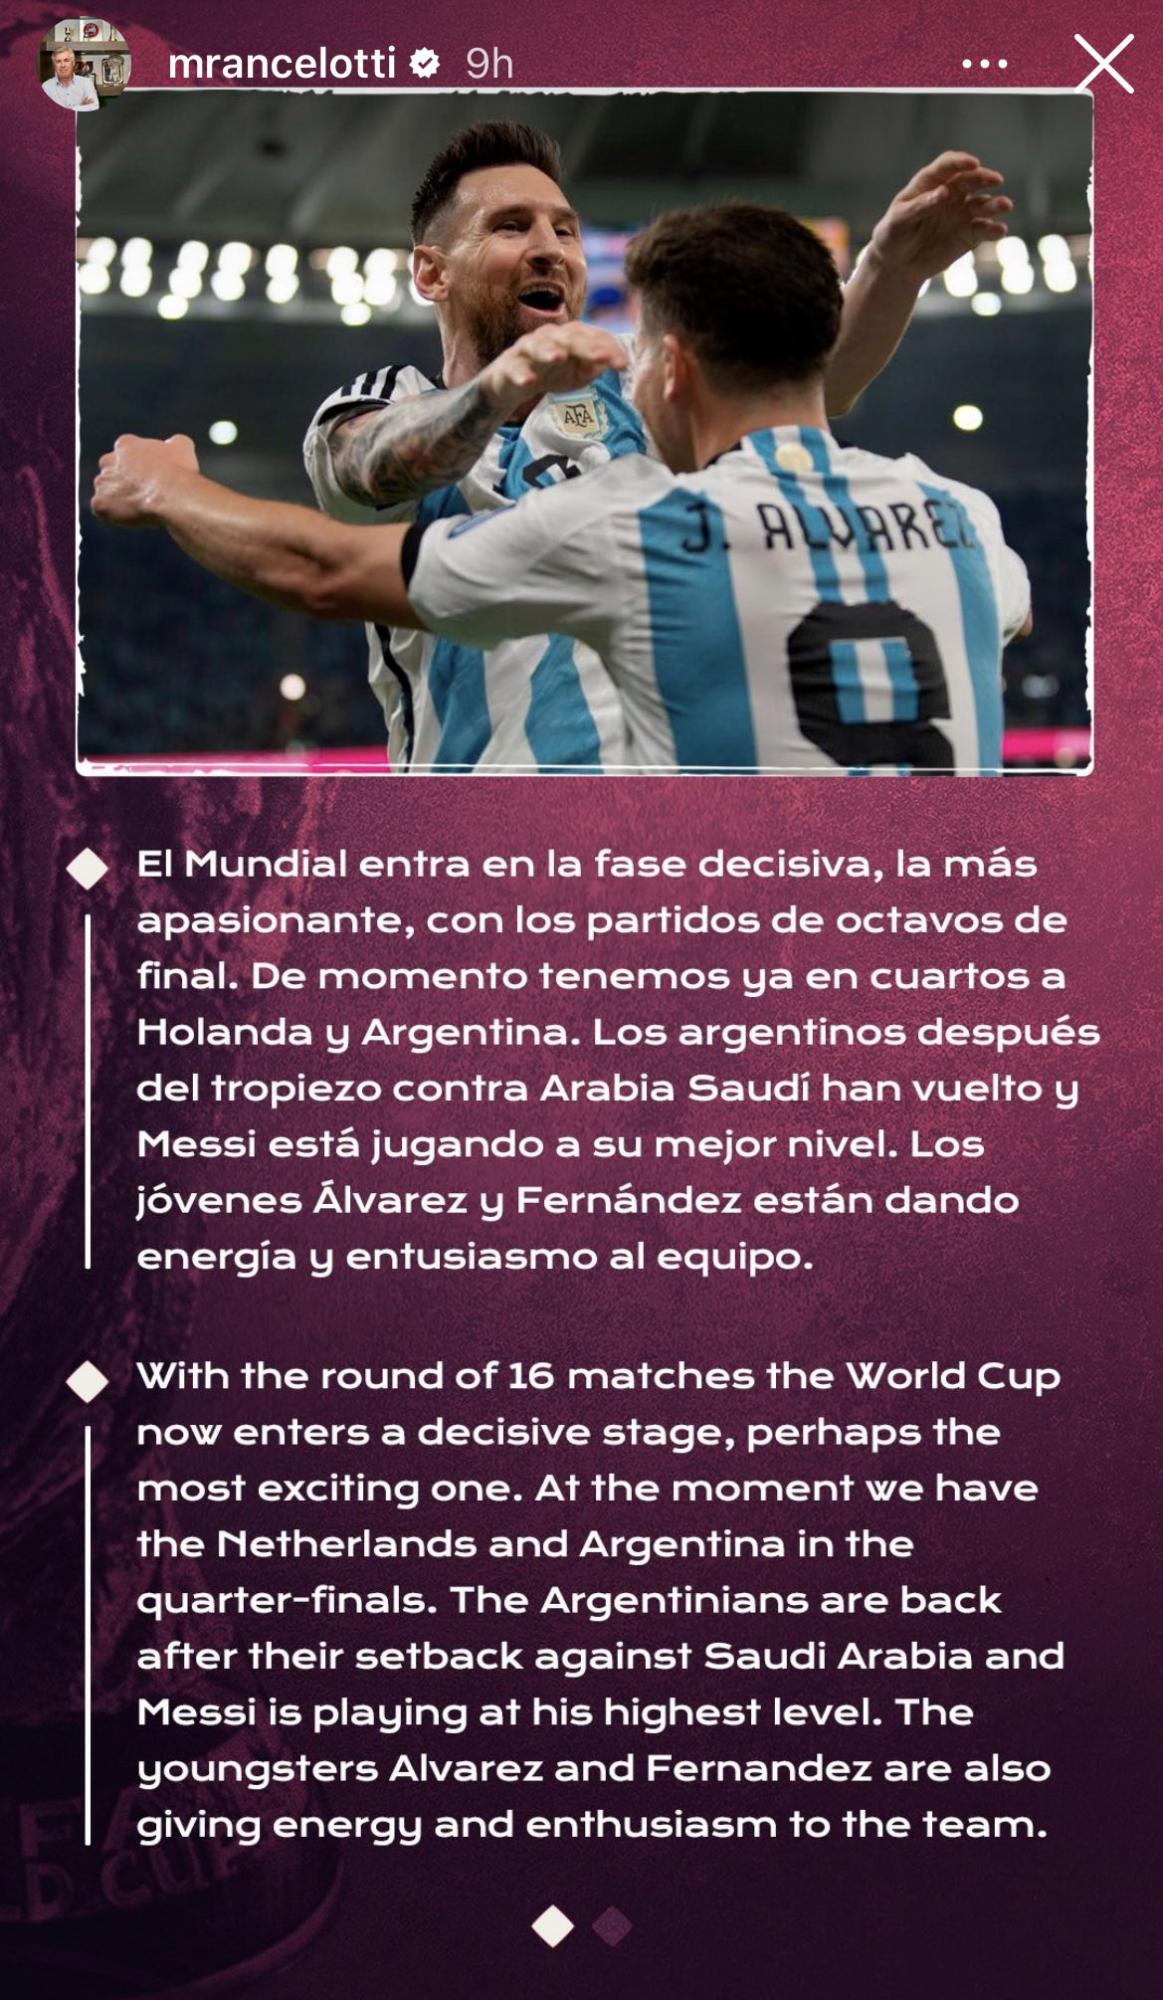 El mensaje de Carlo Ancelotti en sus redes sociales para la selección de Argentina,